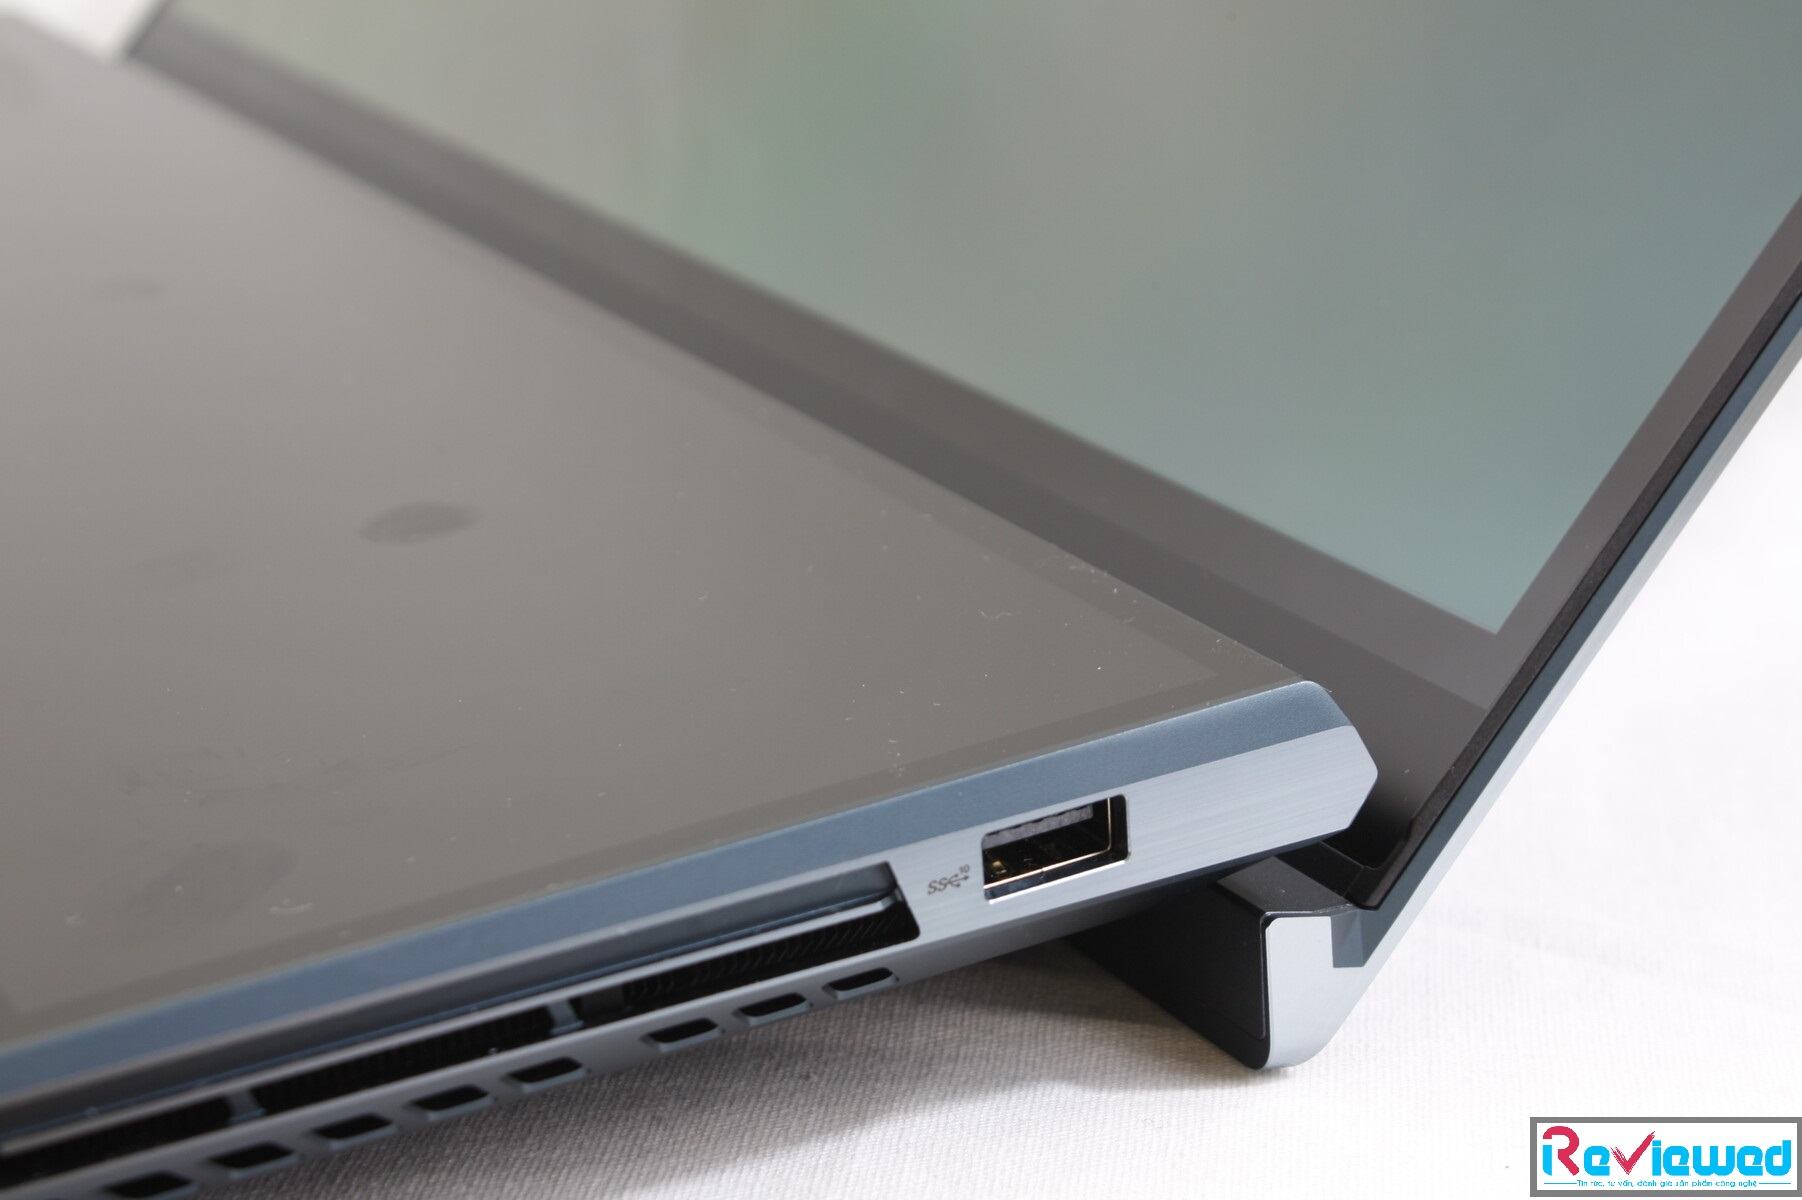 Asus ZenBook Pro Duo